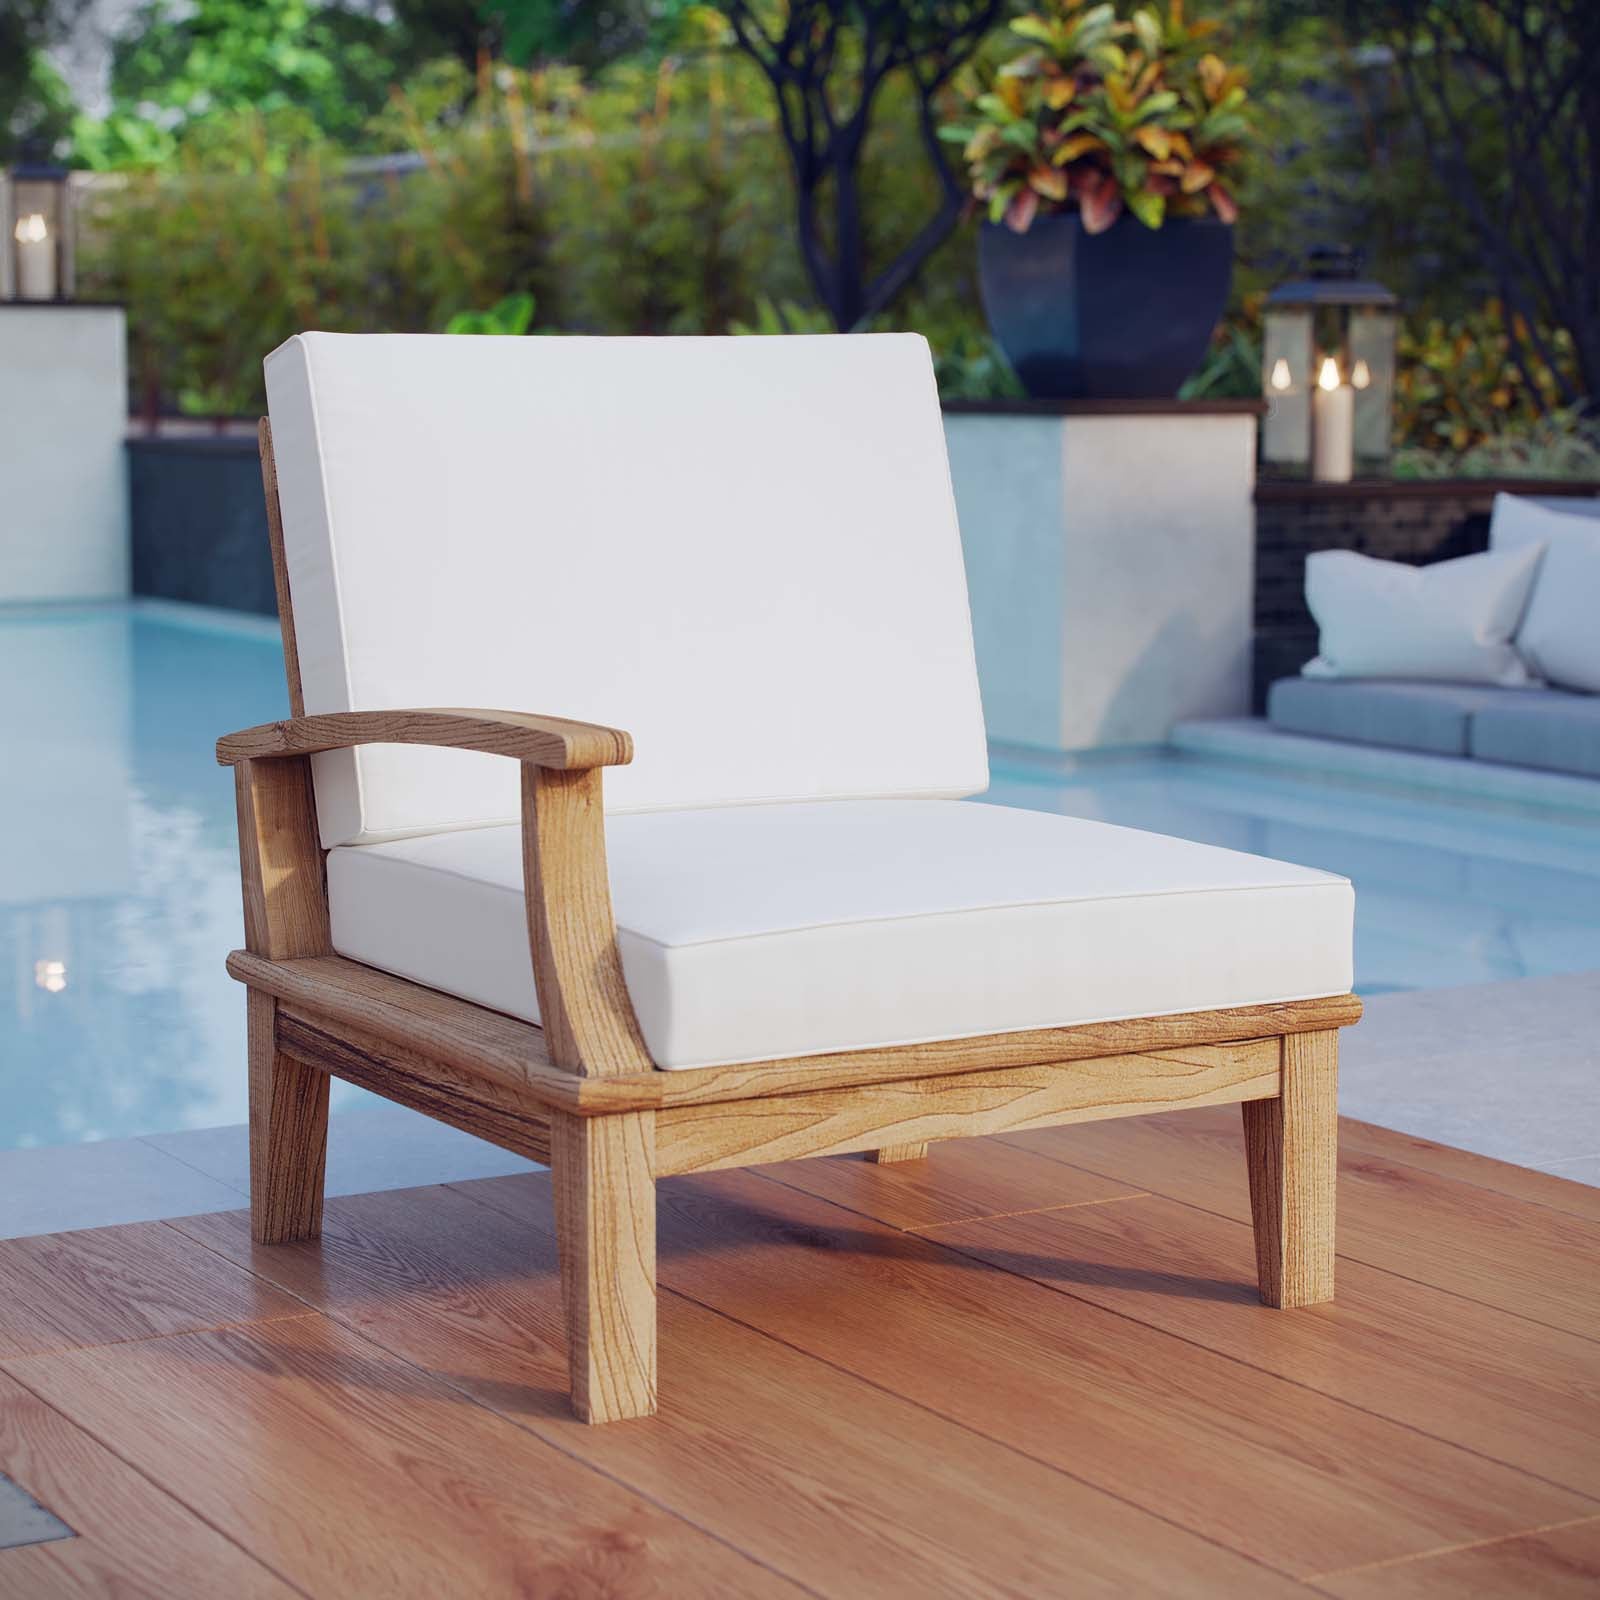 Modway Outdoor Sofas - Marina Outdoor Left-Facing Sofa White & Natural